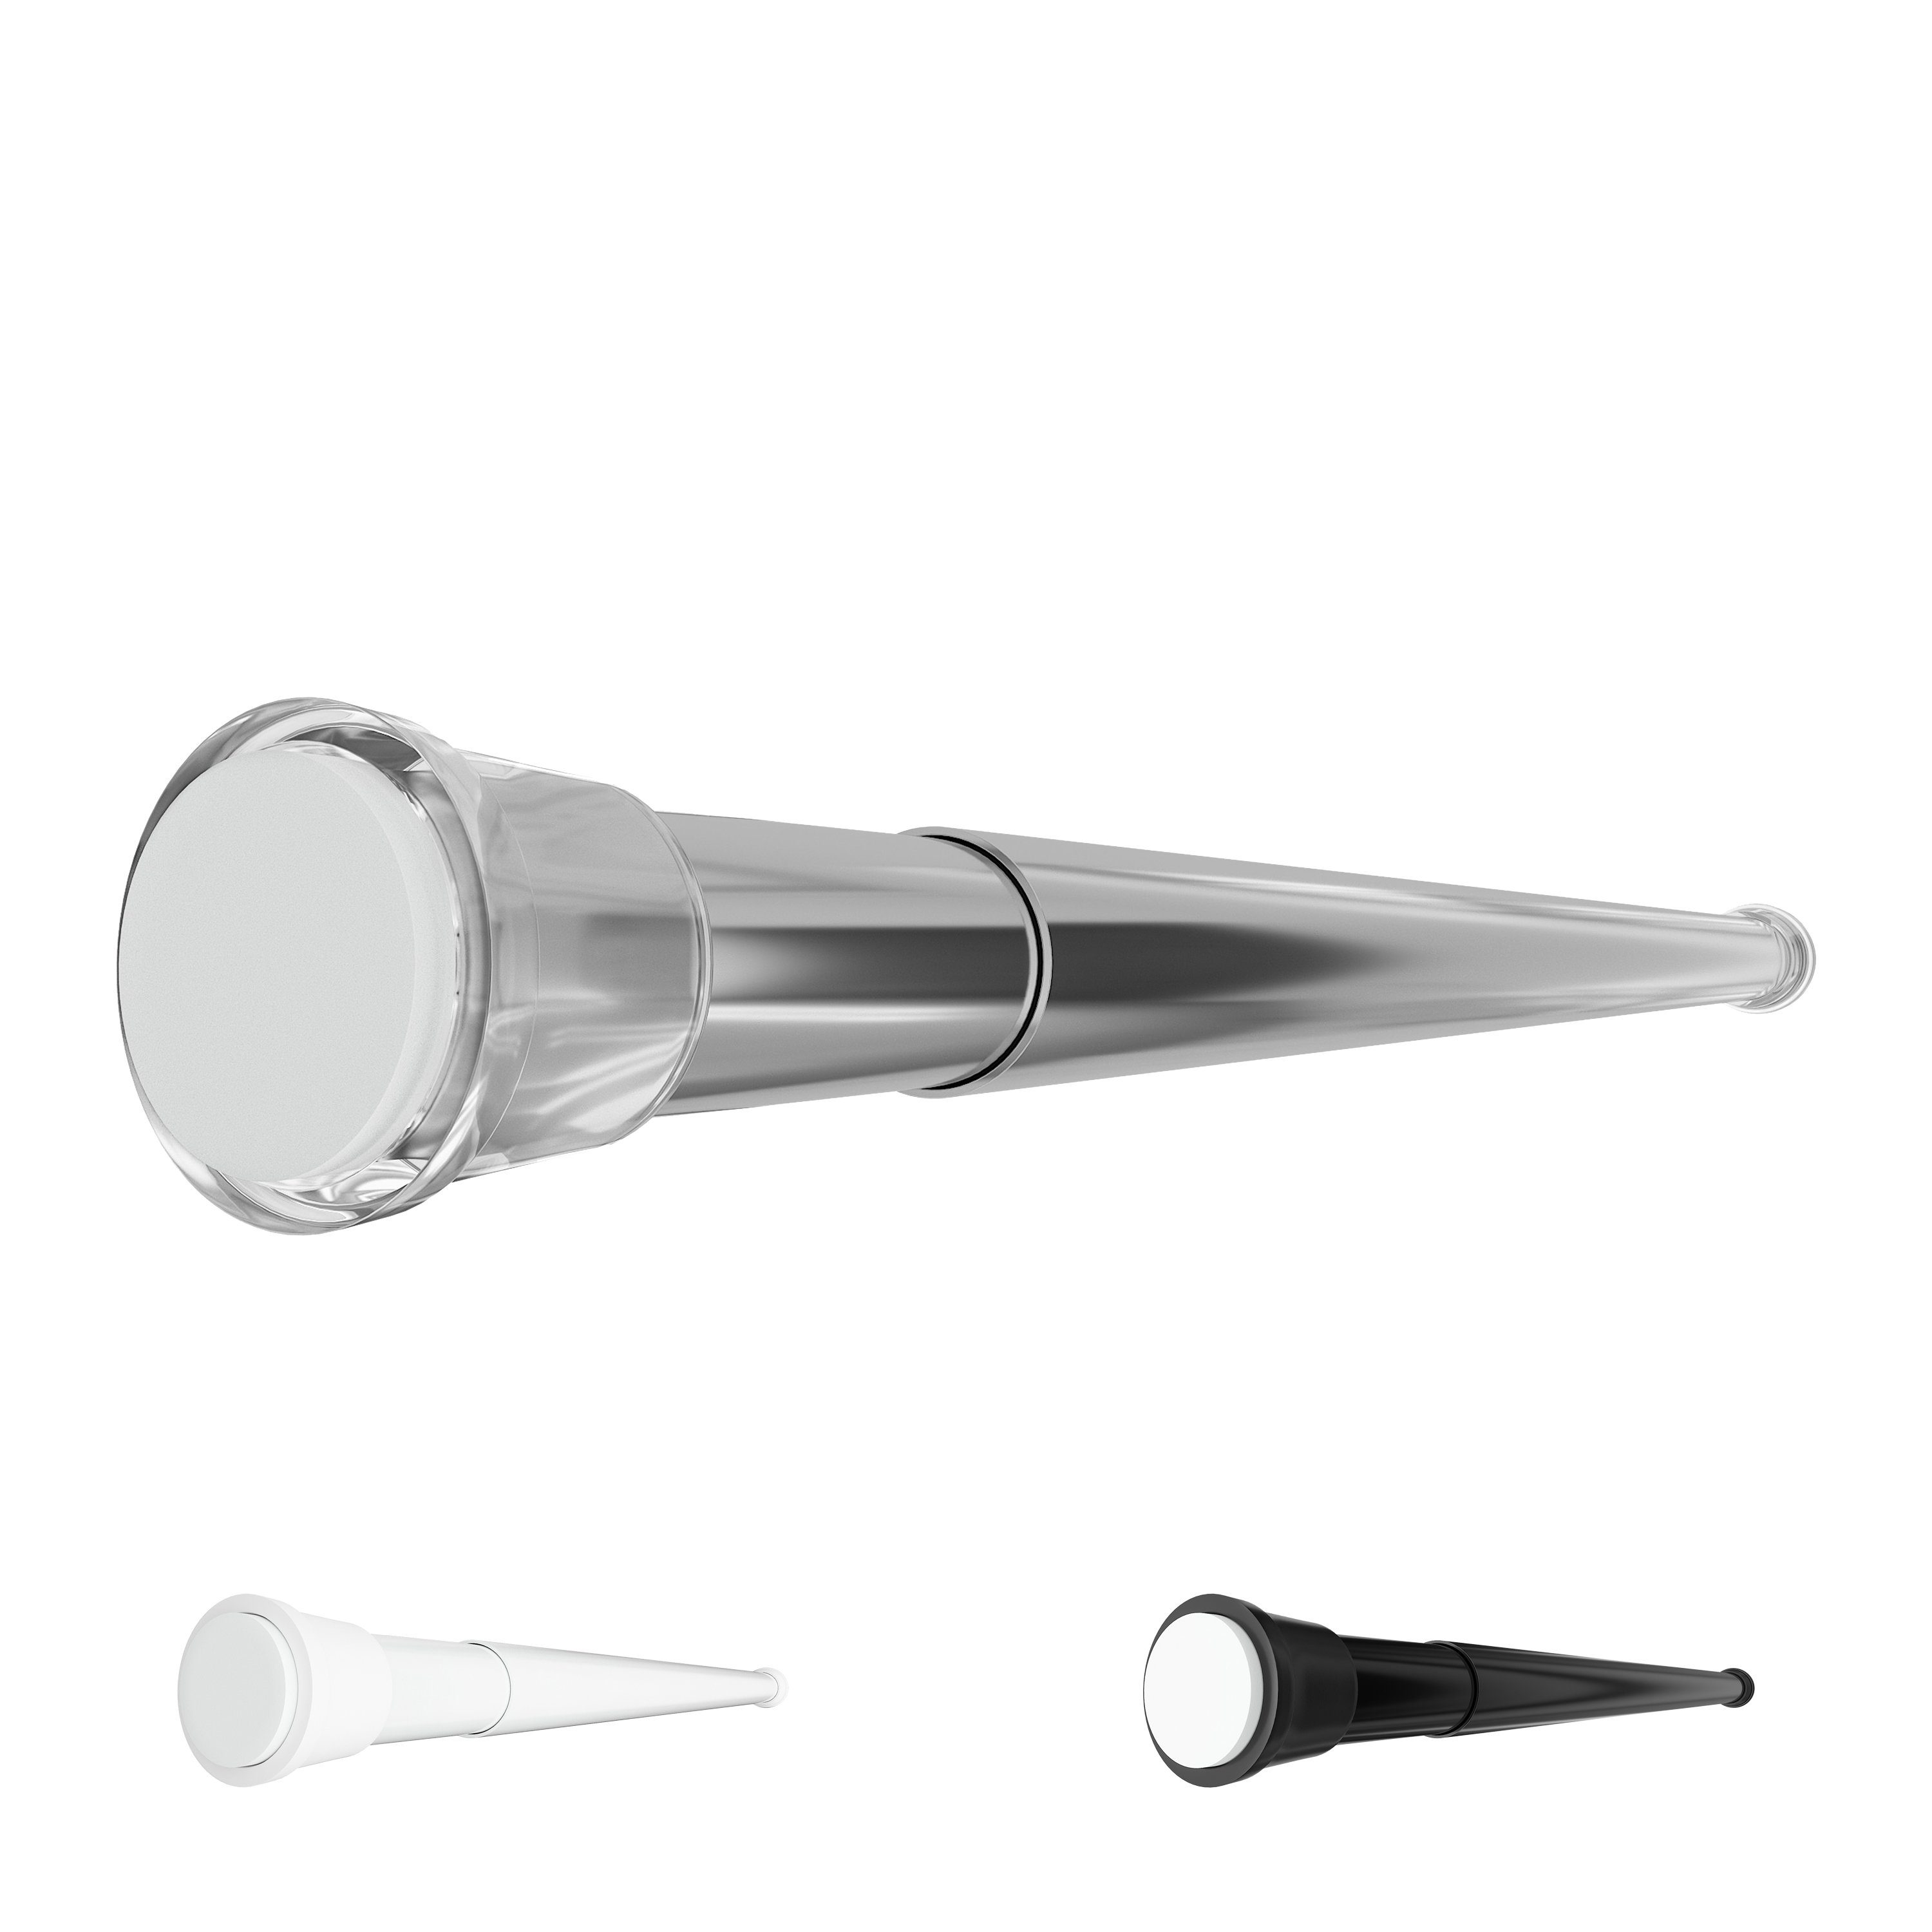 Duschvorhangstange Hastaflex Teleskop Duschstange mit Gummi Enden, Aquabad®, 1-läufig, ausziehbar, Silber, 70 - 110 cm